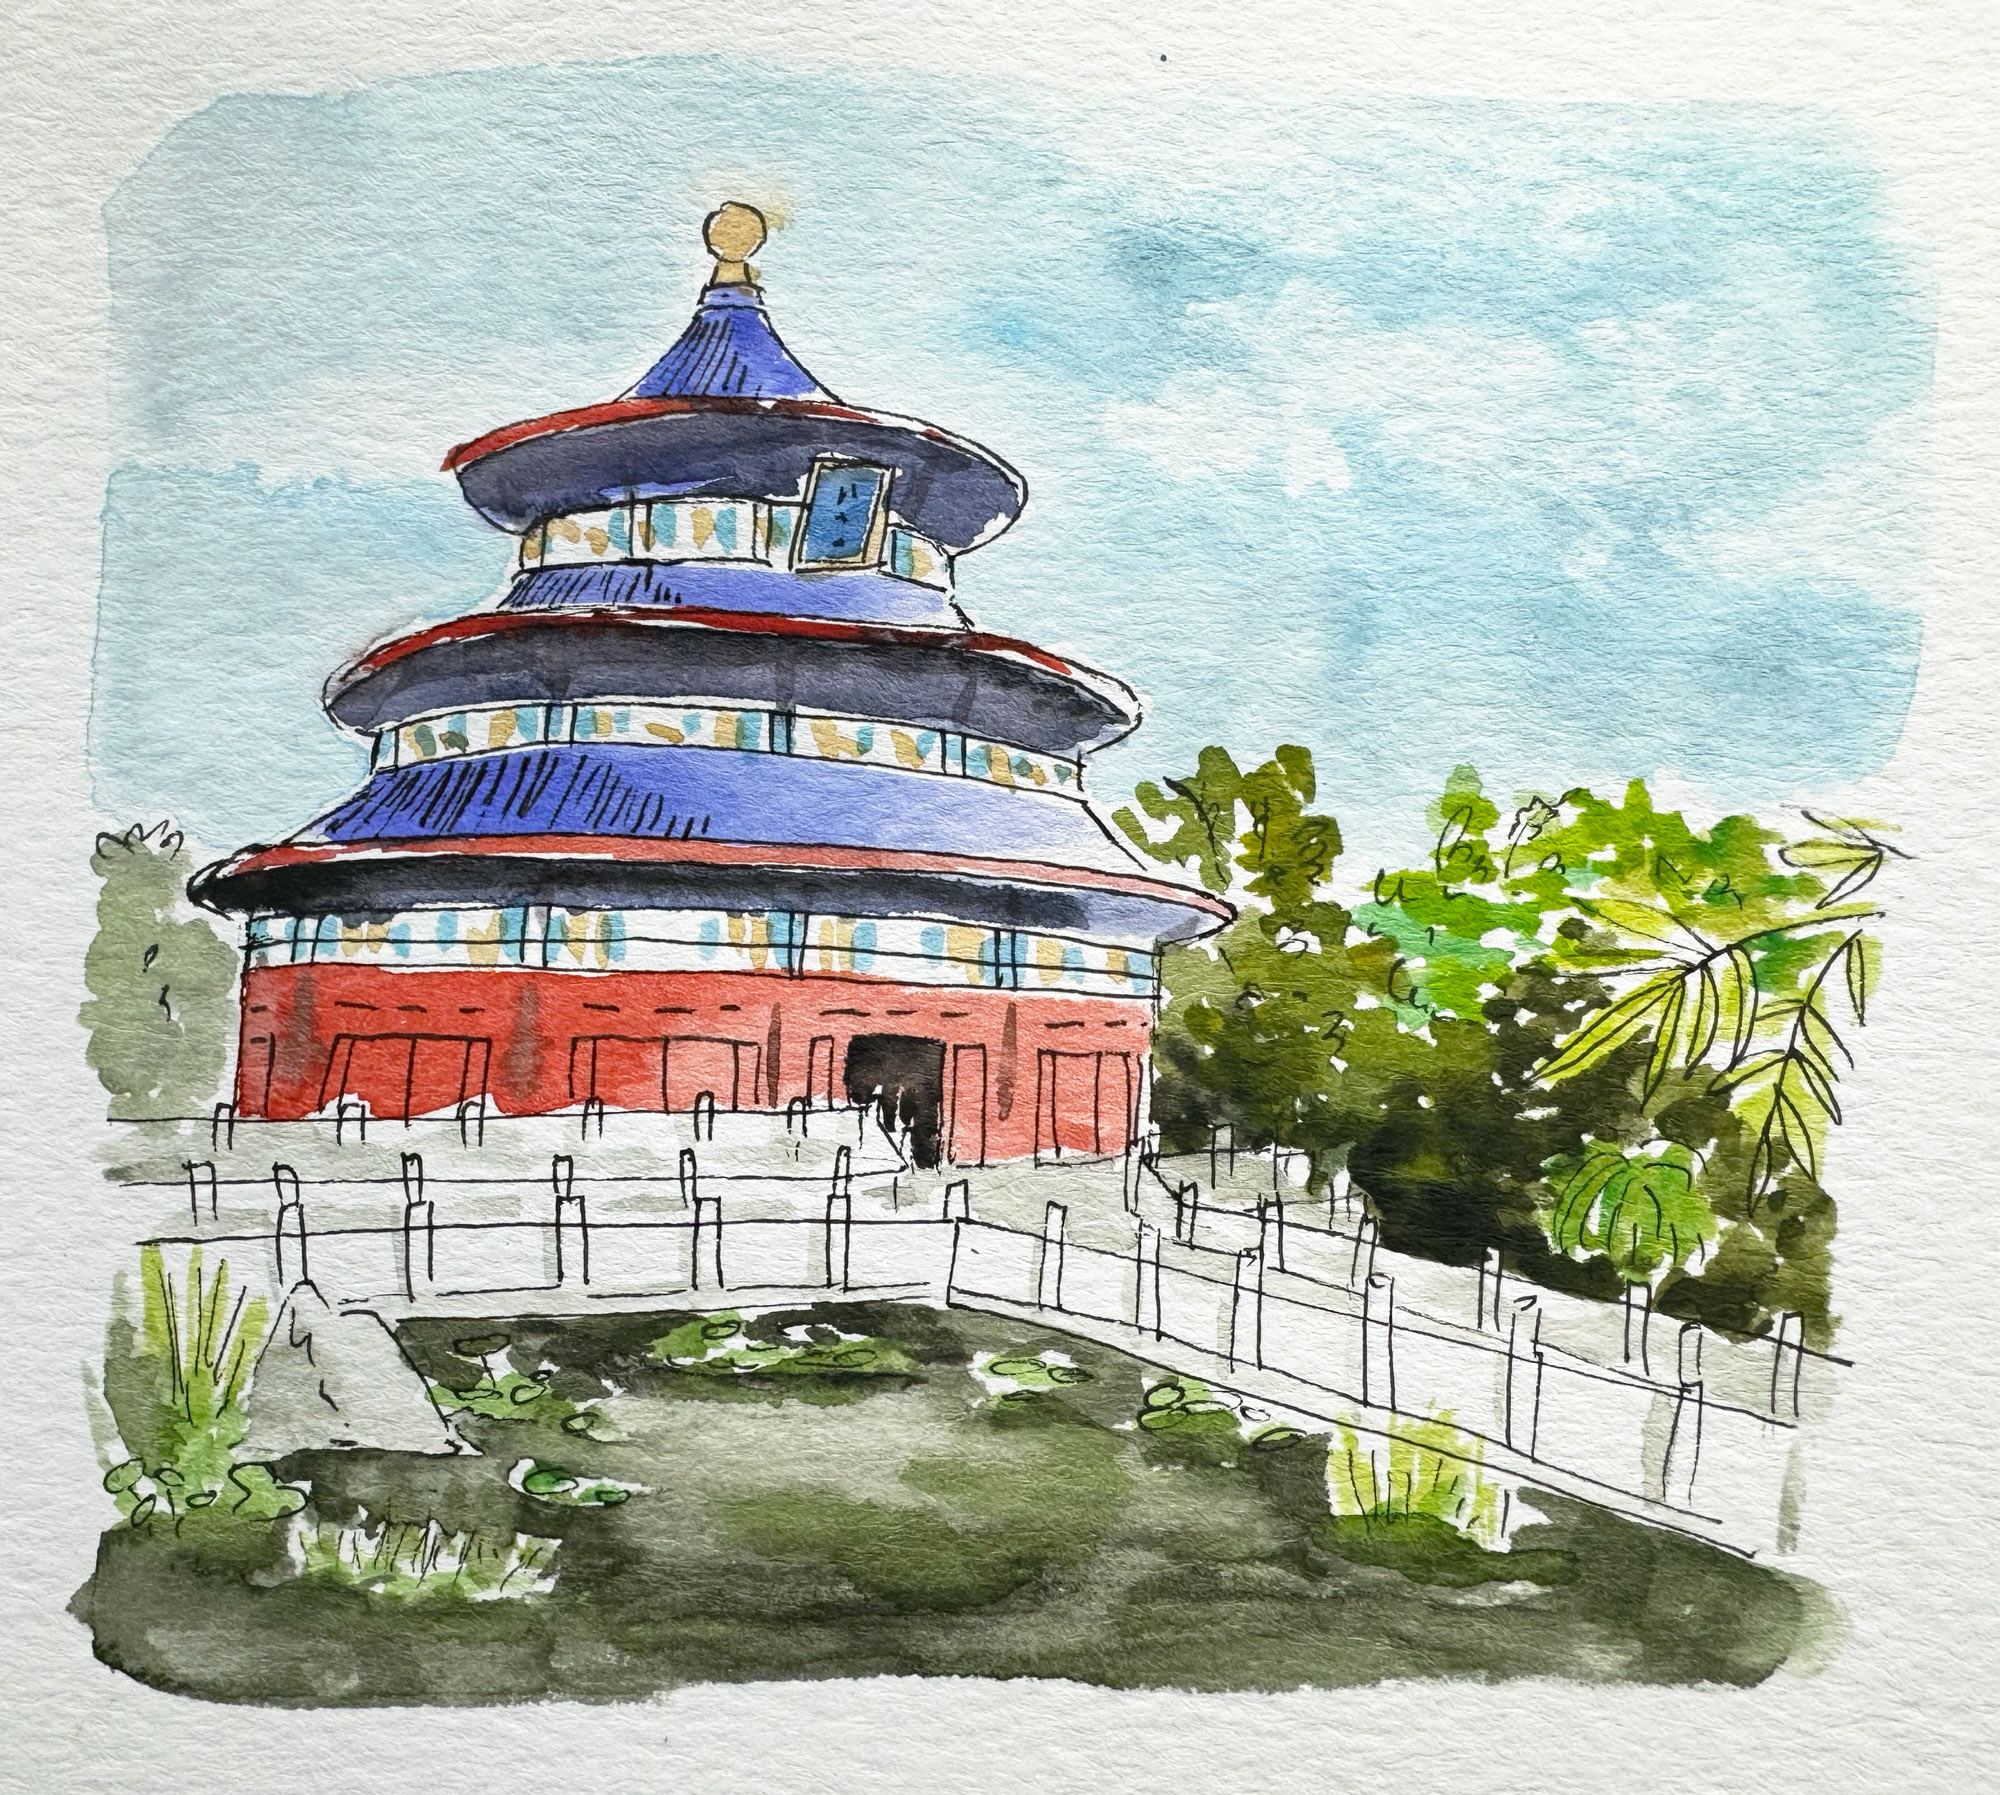 China Pavilion at EPCOT